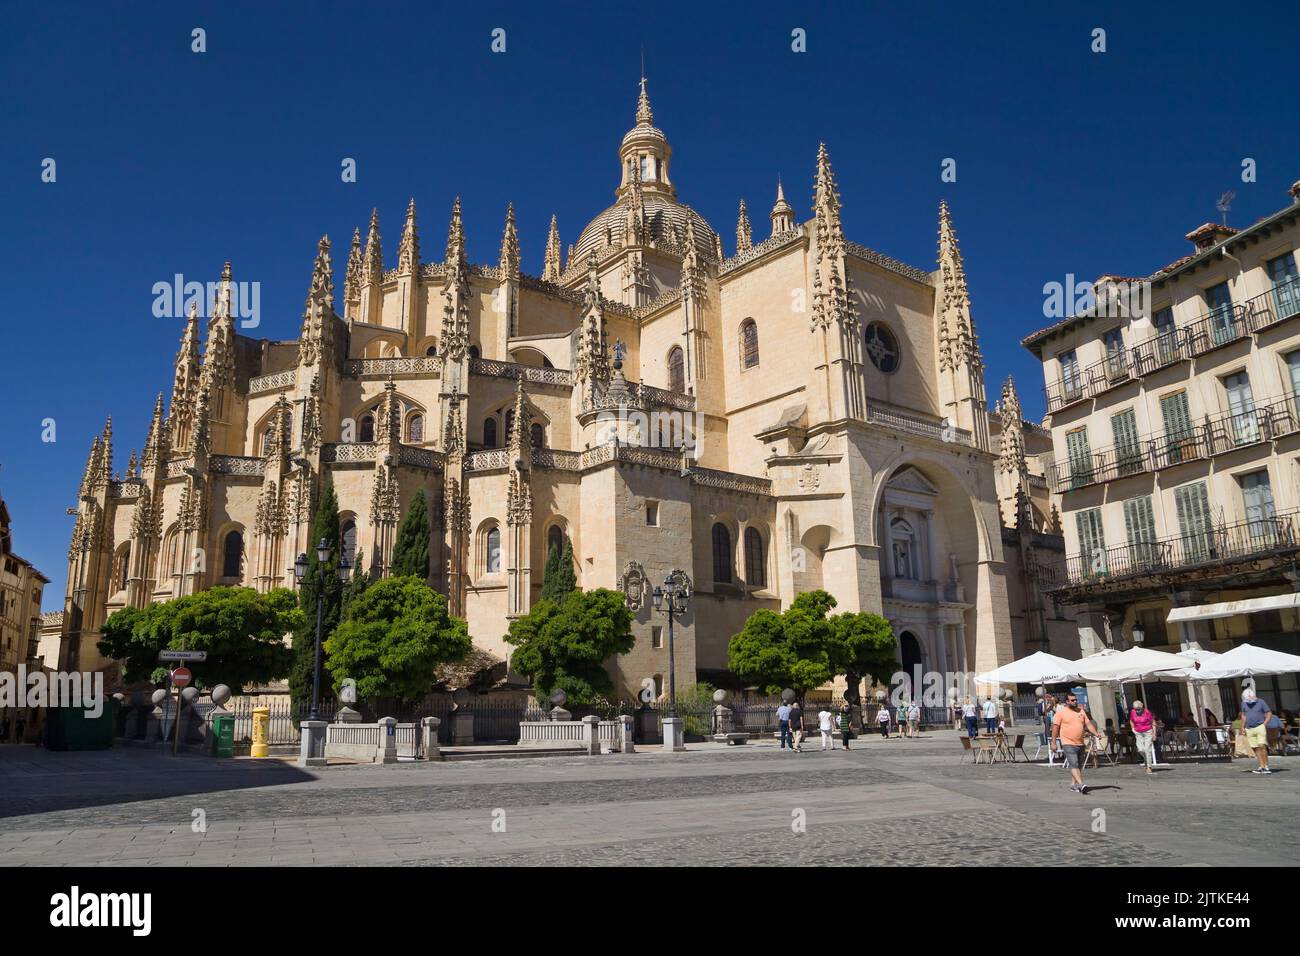 Segovia, Spanien - 22. August 2020: Kathedrale von Segovia von der Plaza Mayor aus gesehen, Segovia, Spanien. Stockfoto